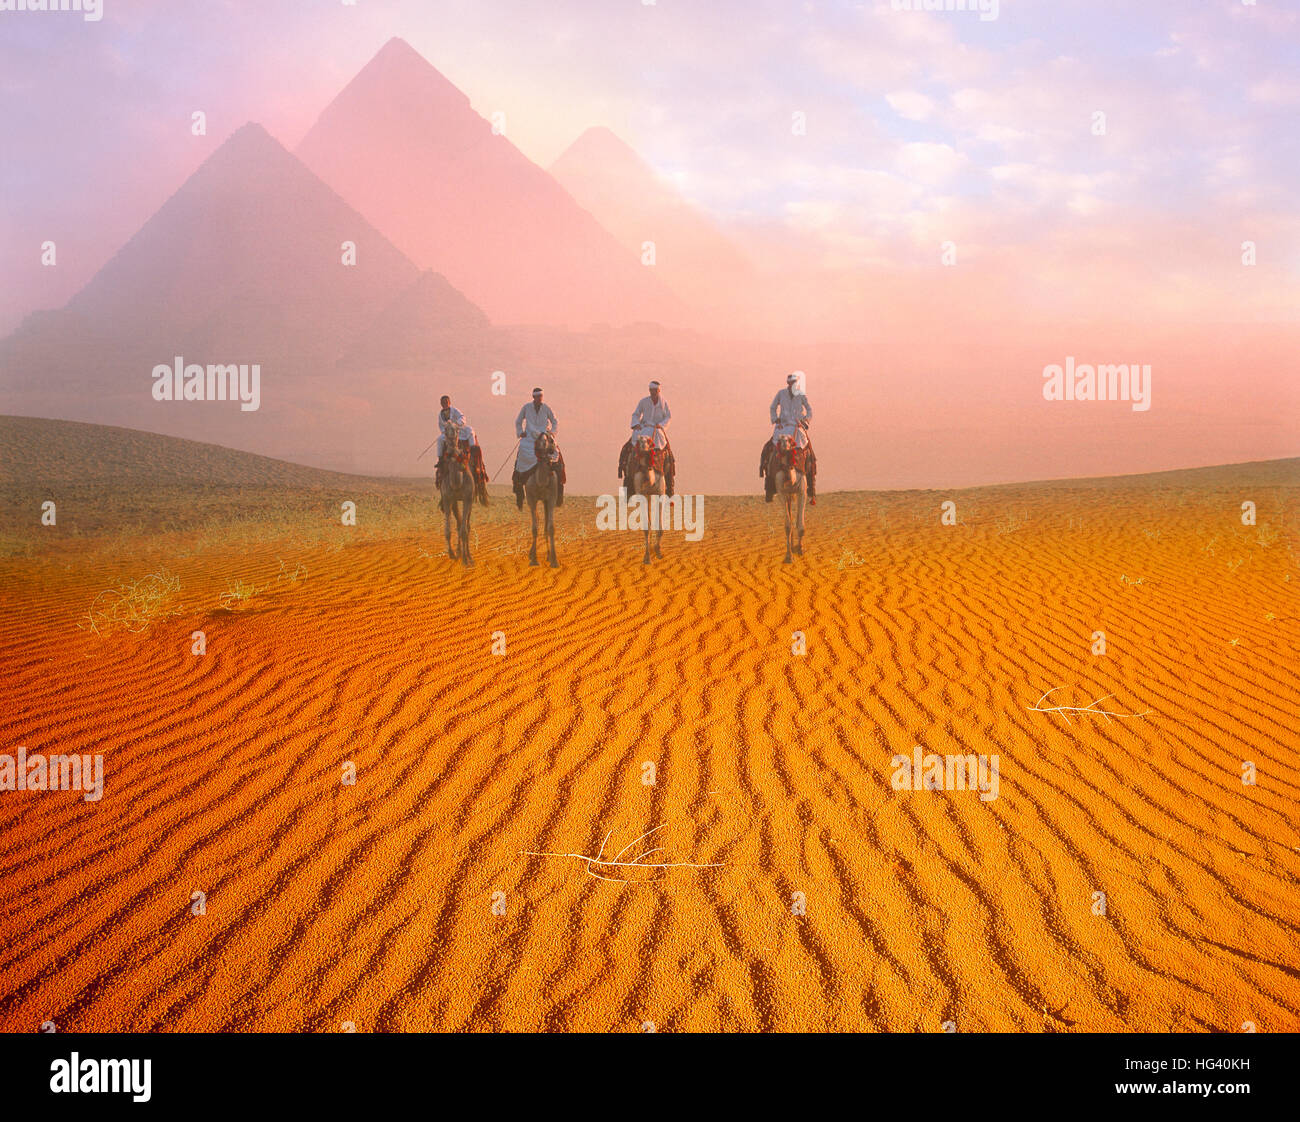 Las pirámides y los cuatro jinetes de camellos al amanecer en la meseta de Giza, Cairo, Egipto Foto de stock